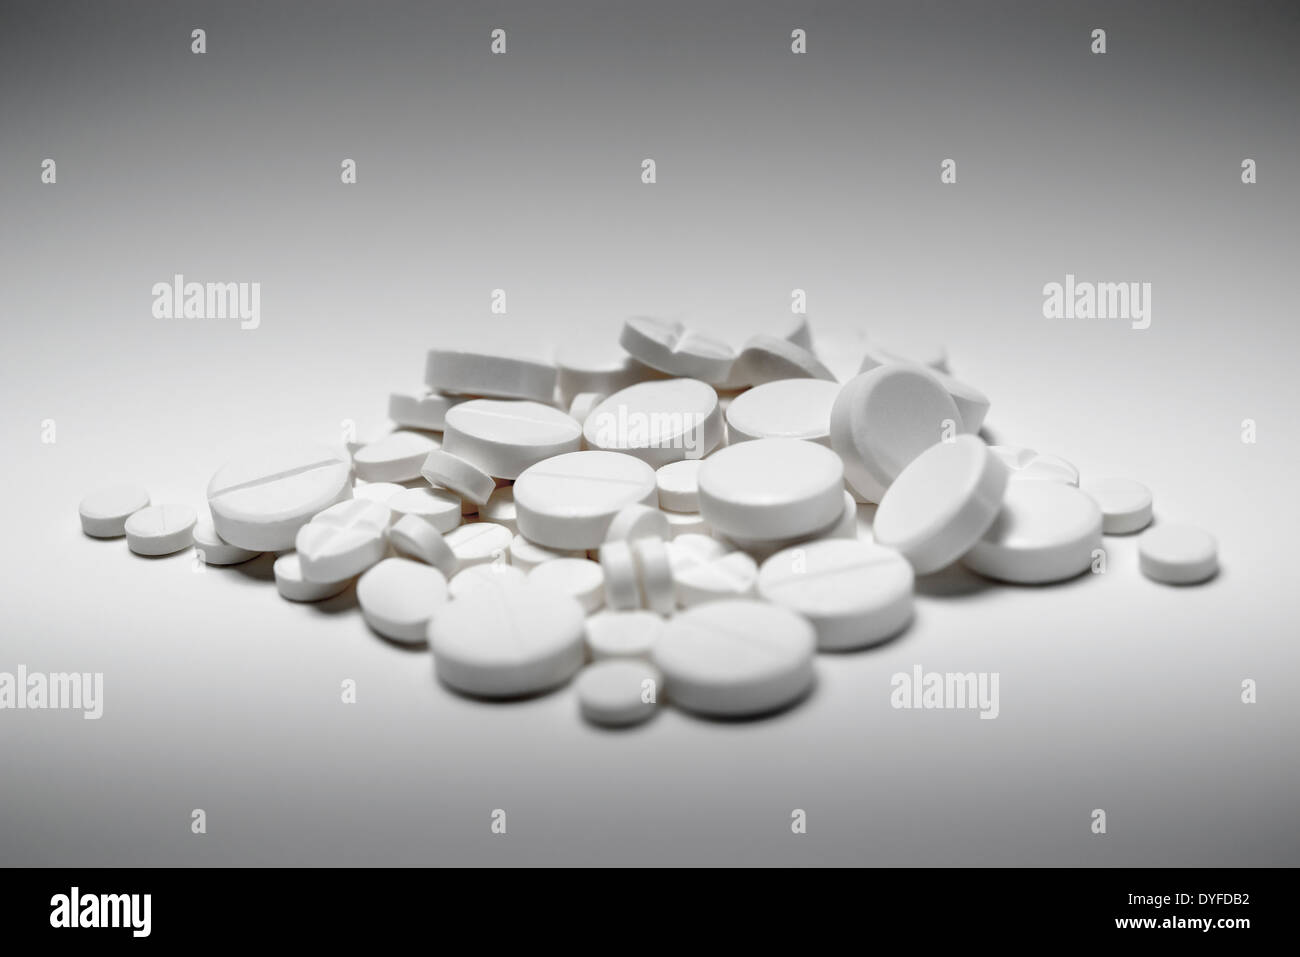 Un peu au hasard tas de pilules blanches mélangées de différentes tailles et formes, abattu en blanc. L'abus de drogues ou surdose concept. Banque D'Images